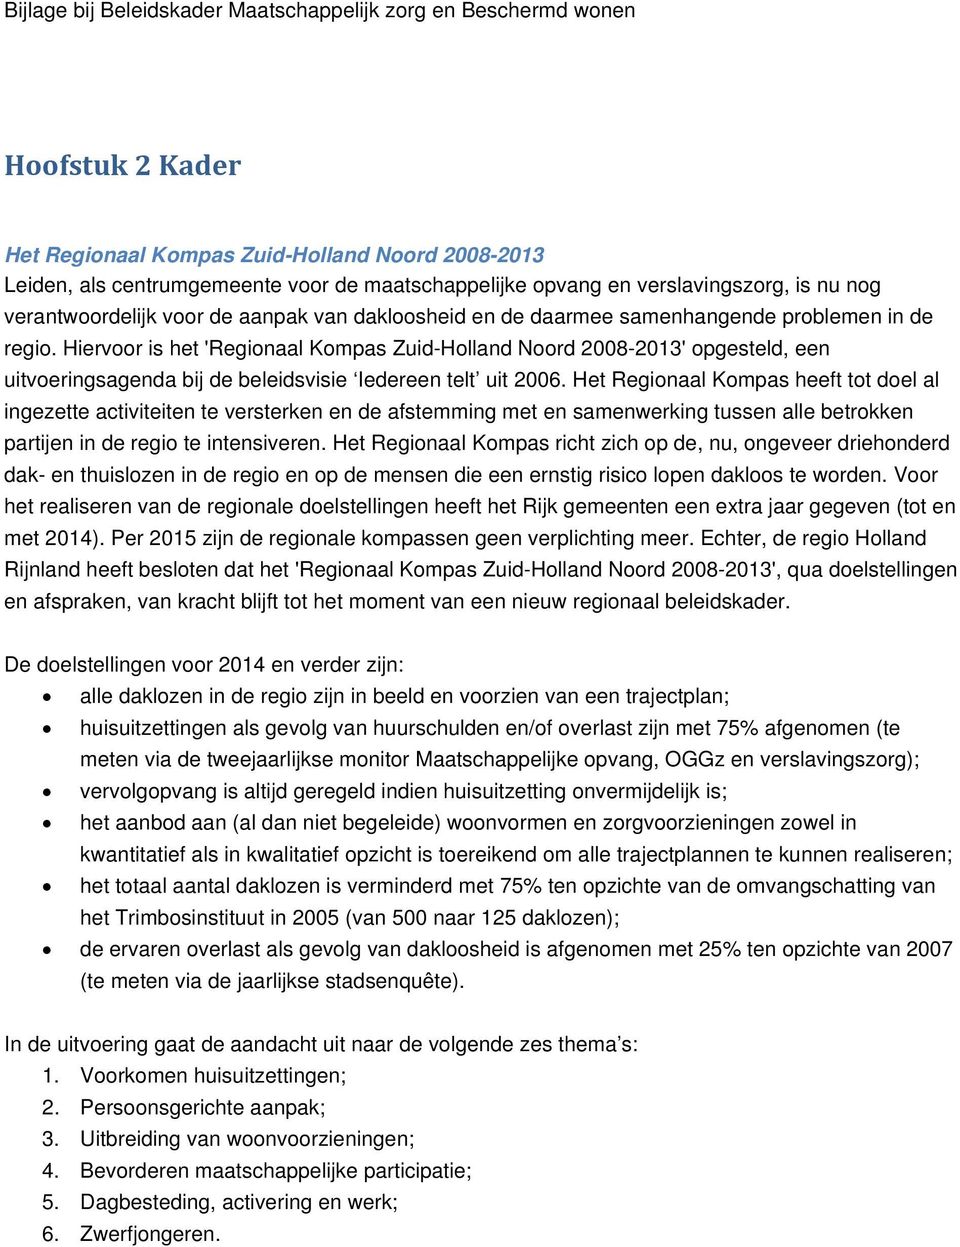 Hiervoor is het 'Regionaal Kompas Zuid-Holland Noord 2008-2013' opgesteld, een uitvoeringsagenda bij de beleidsvisie Iedereen telt uit 2006.